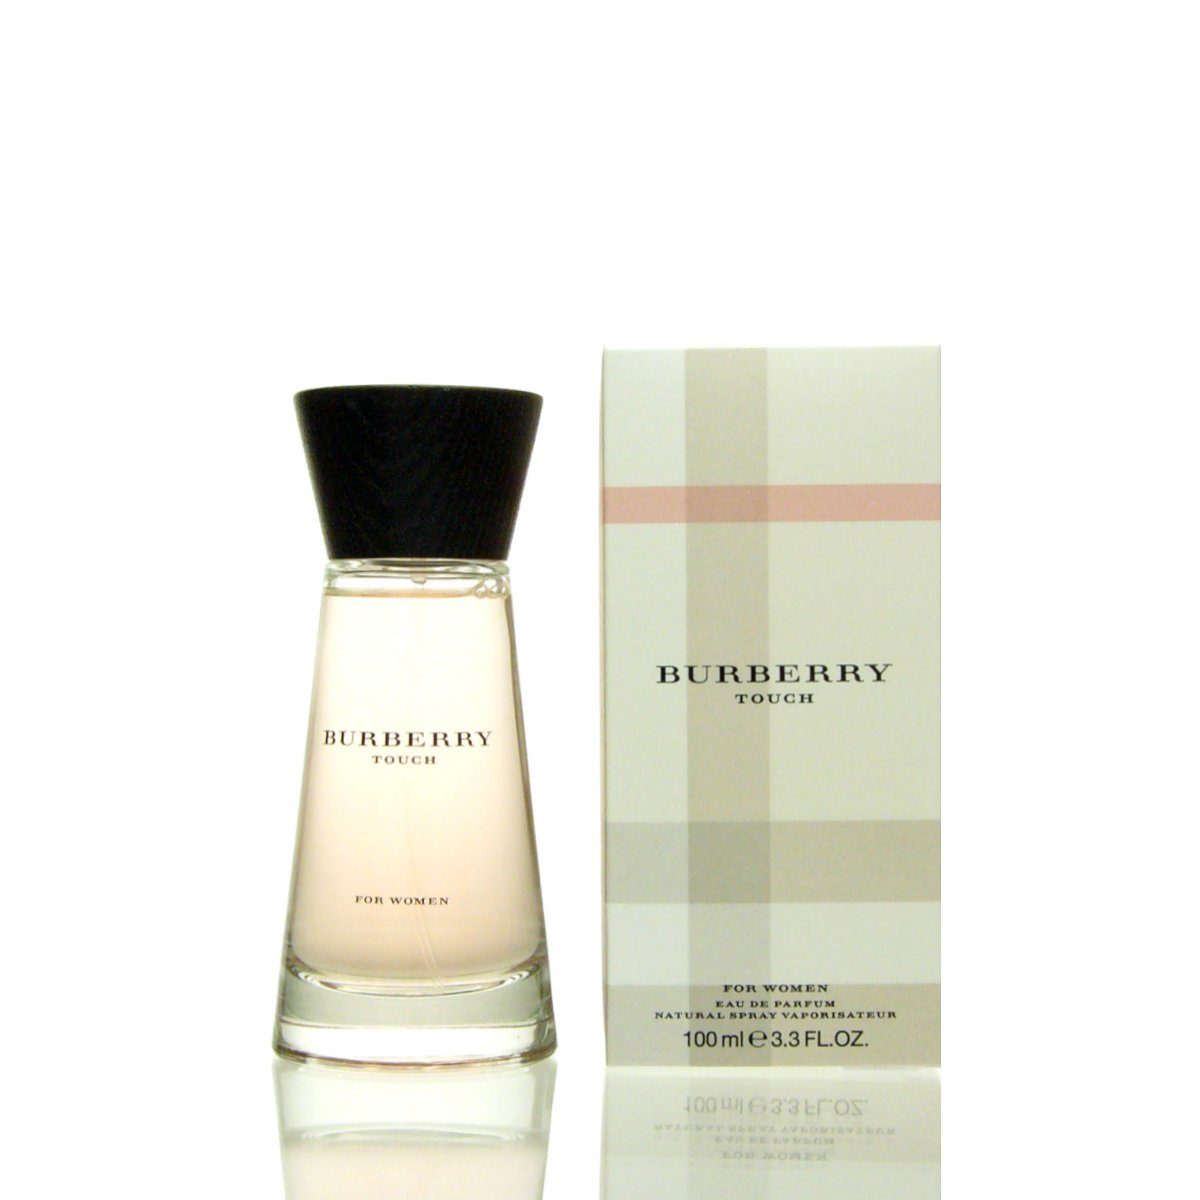 BURBERRY Eau Eau 100 Woman Touch ml de Parfum de Parfum Burberry for